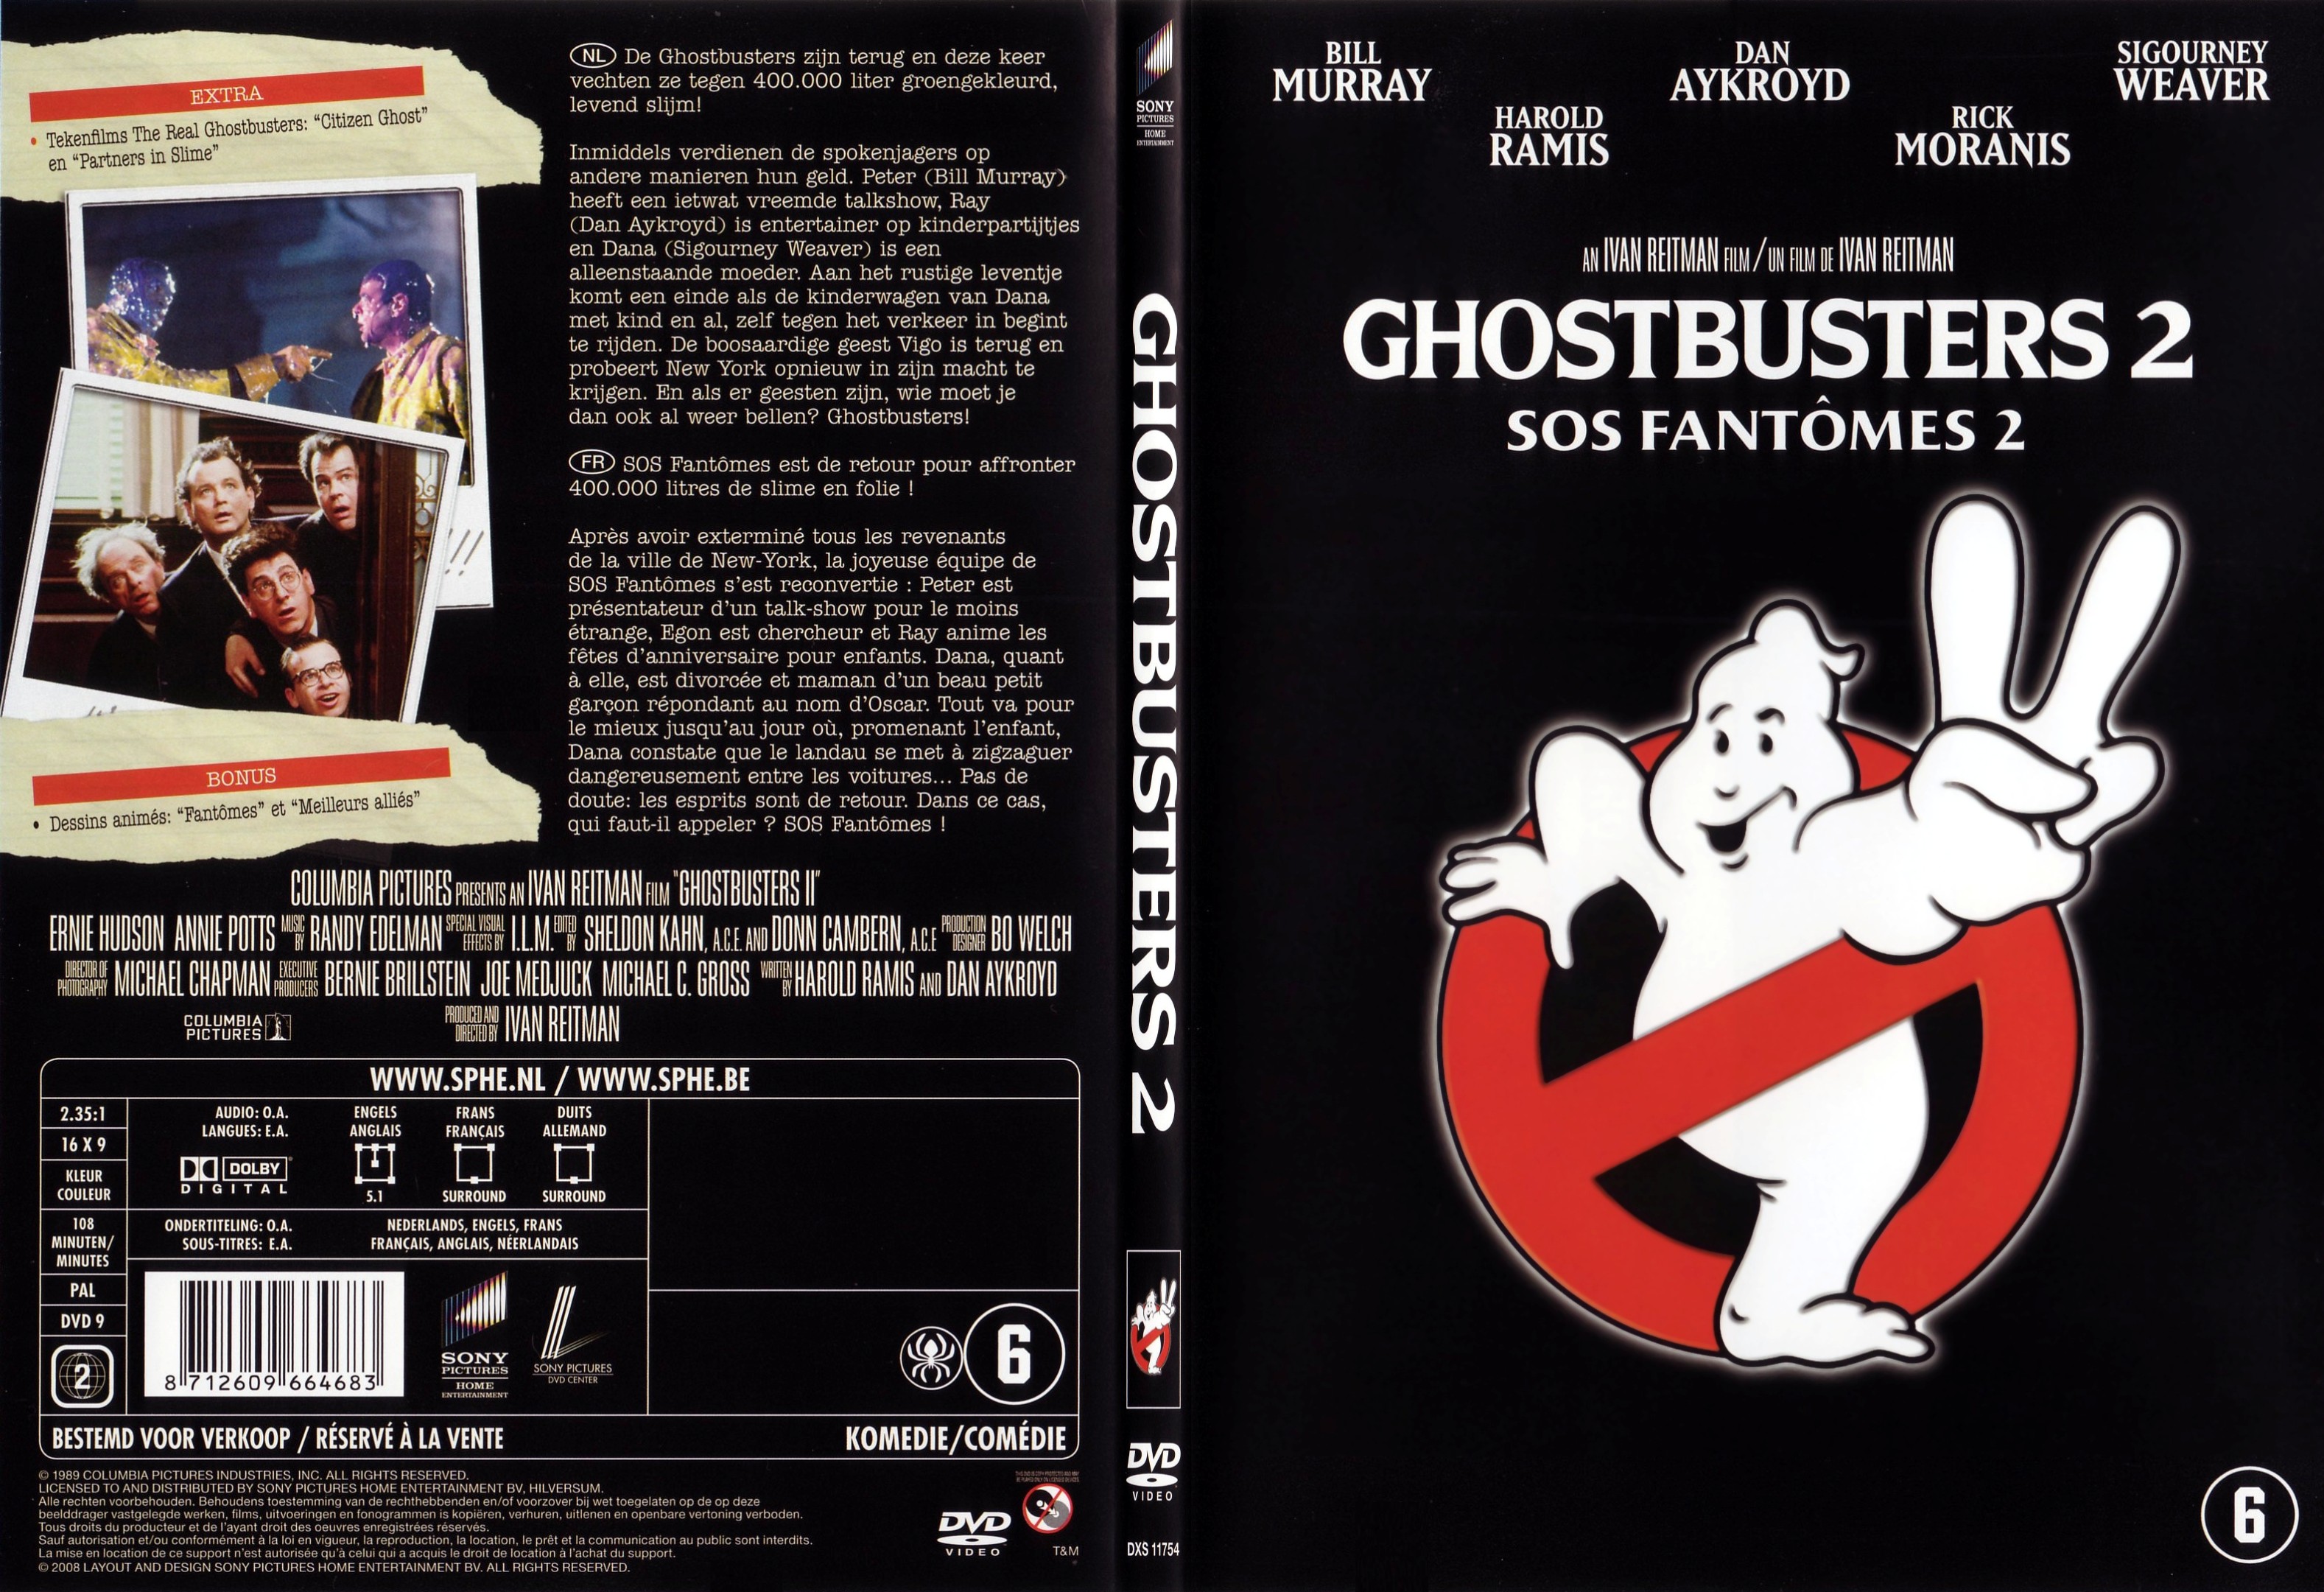 Jaquette DVD SOS fantomes 2 - Ghostbusters 2 - SLIM v3